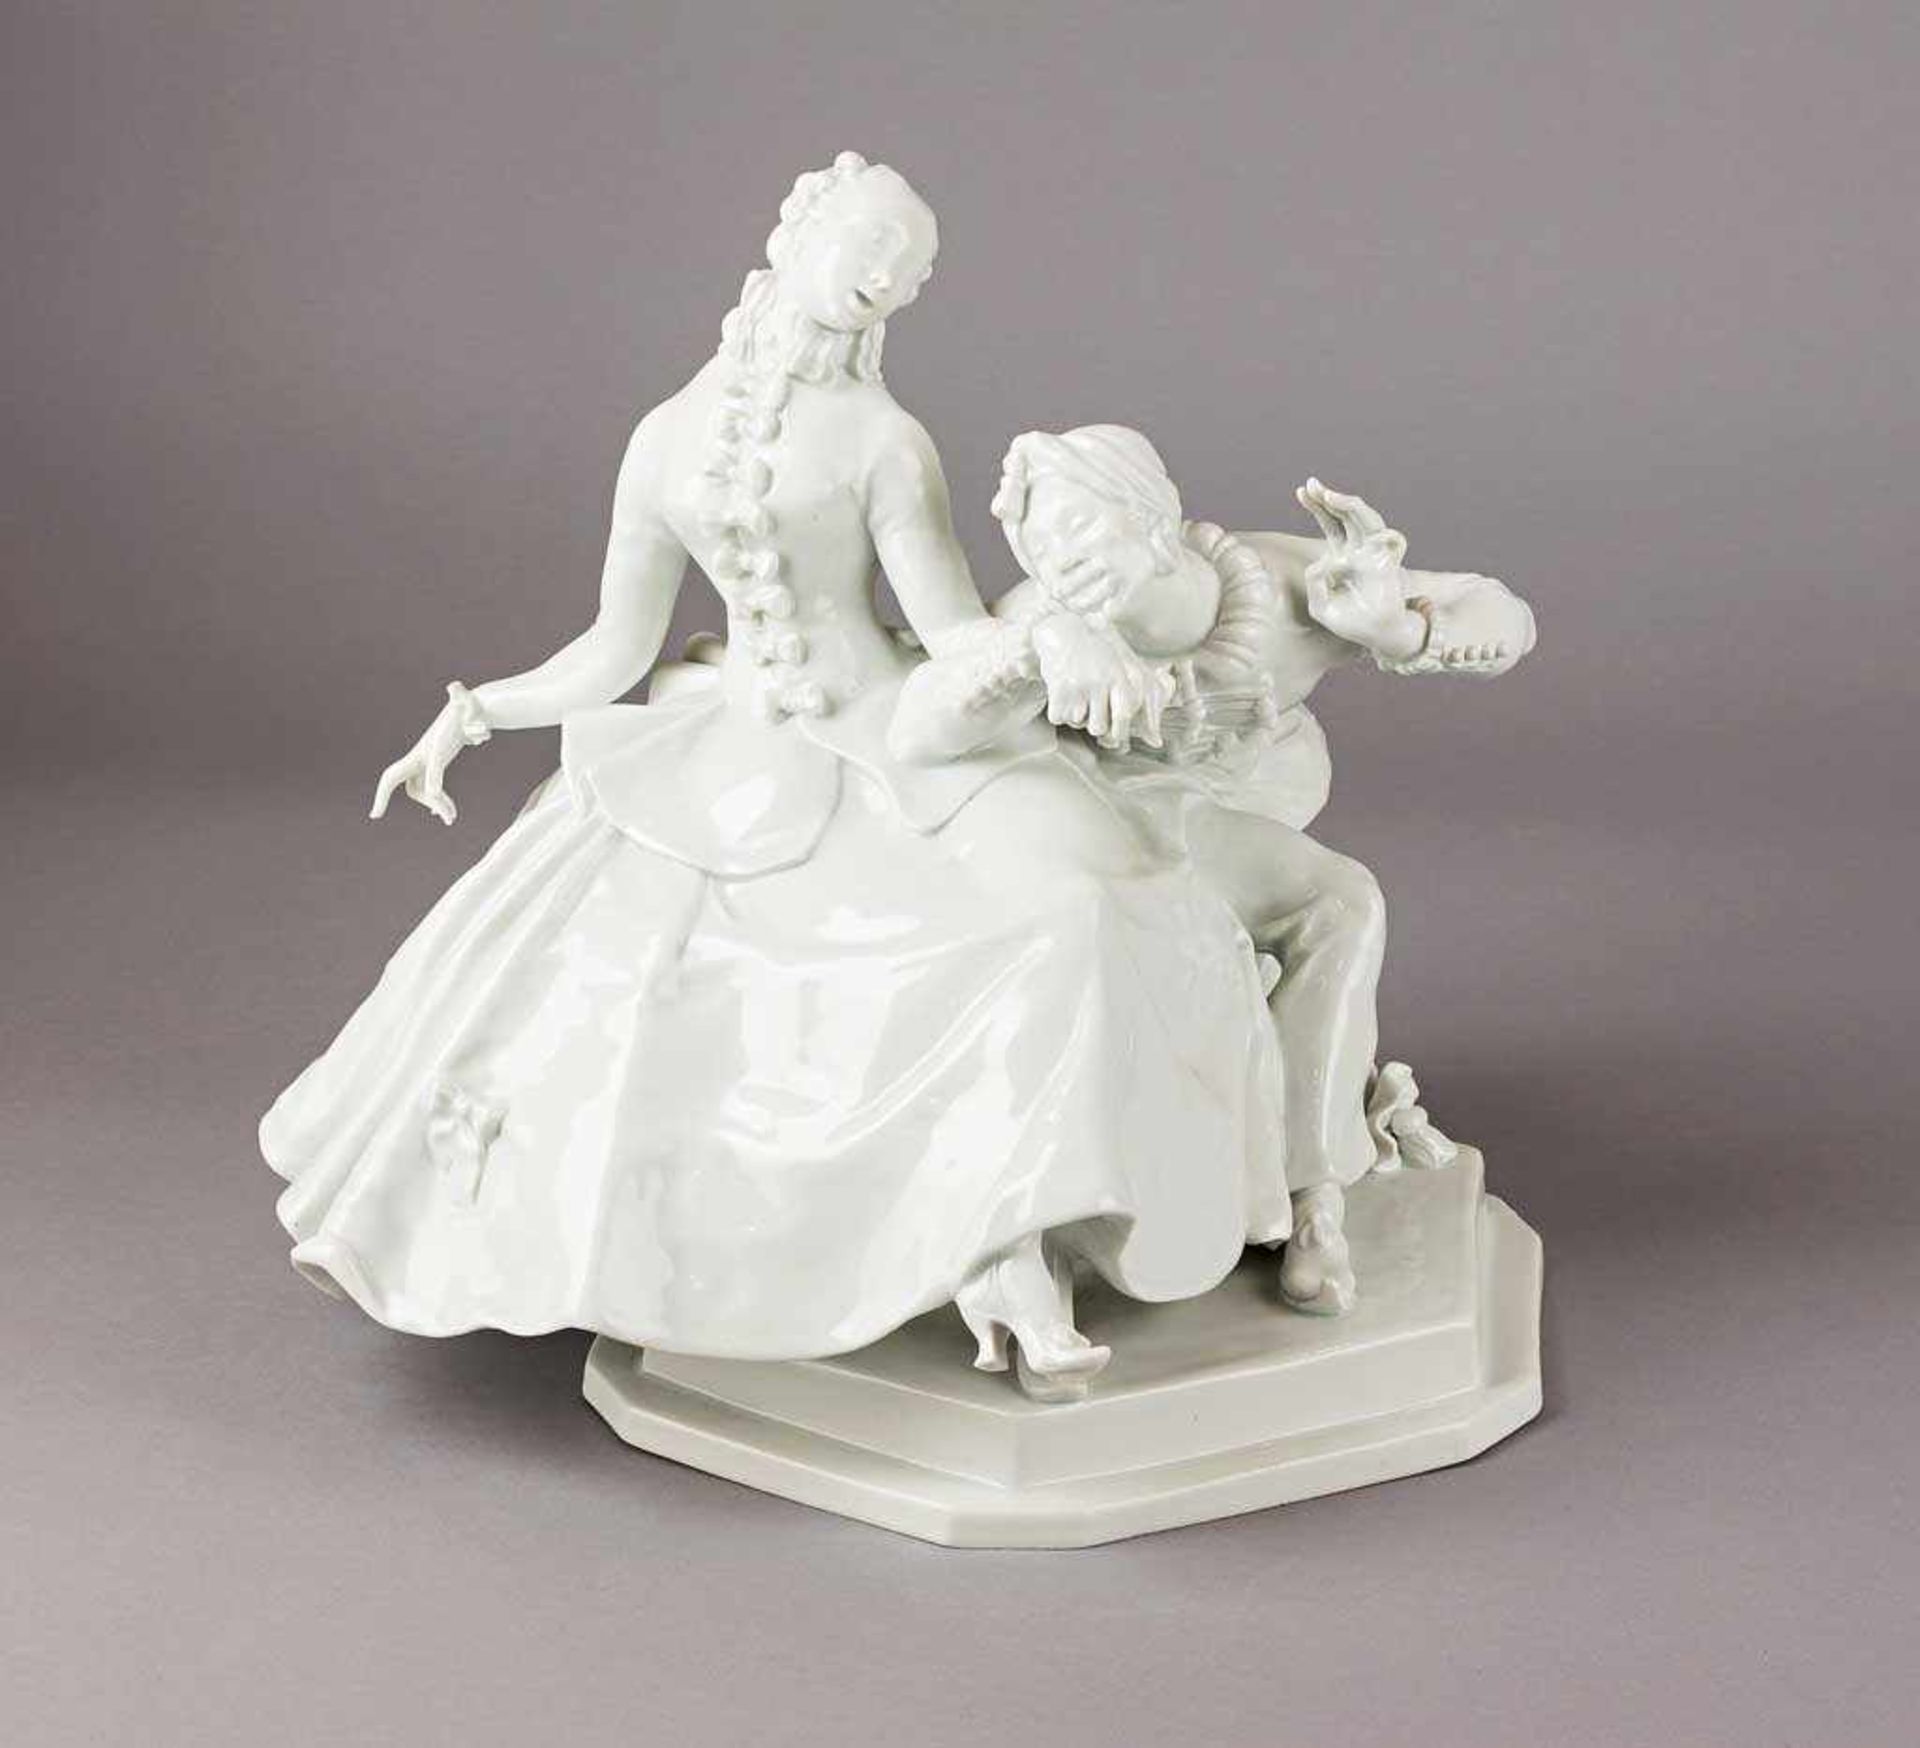 Dame mit Mohr. Monochrom weiß glasierte Figurine. Entwurf Paul Scheurich 1920. Blaue